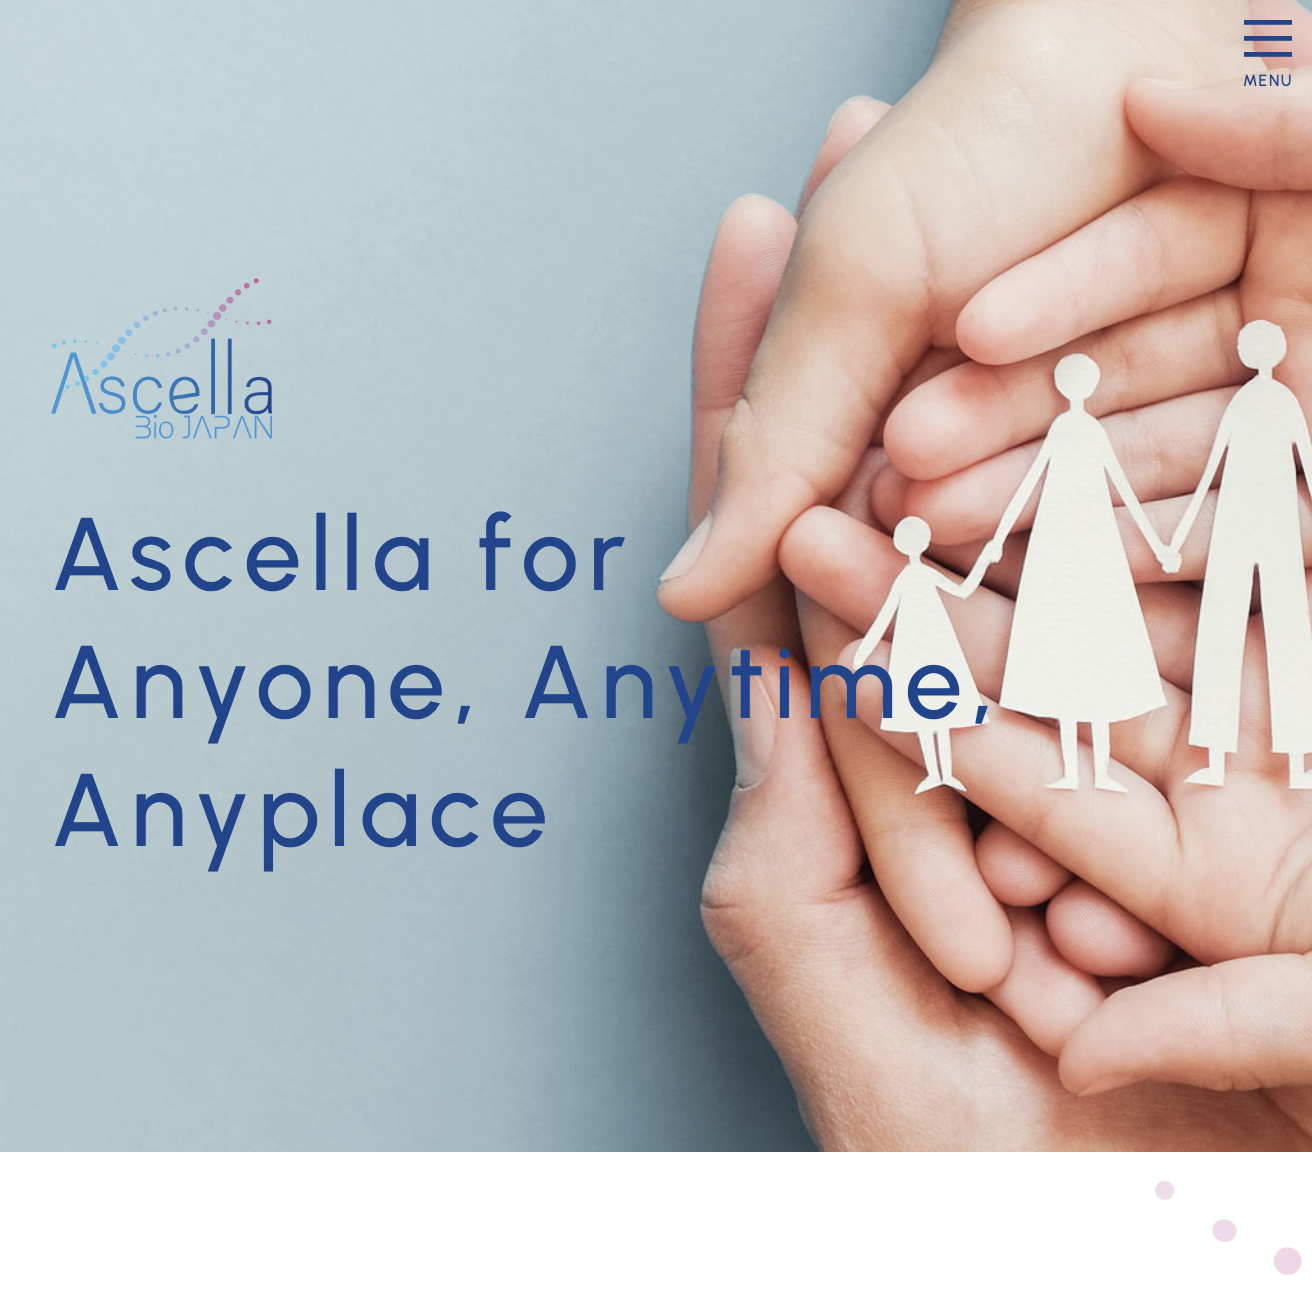 Ascella Bio JAPAN 株式会社 様